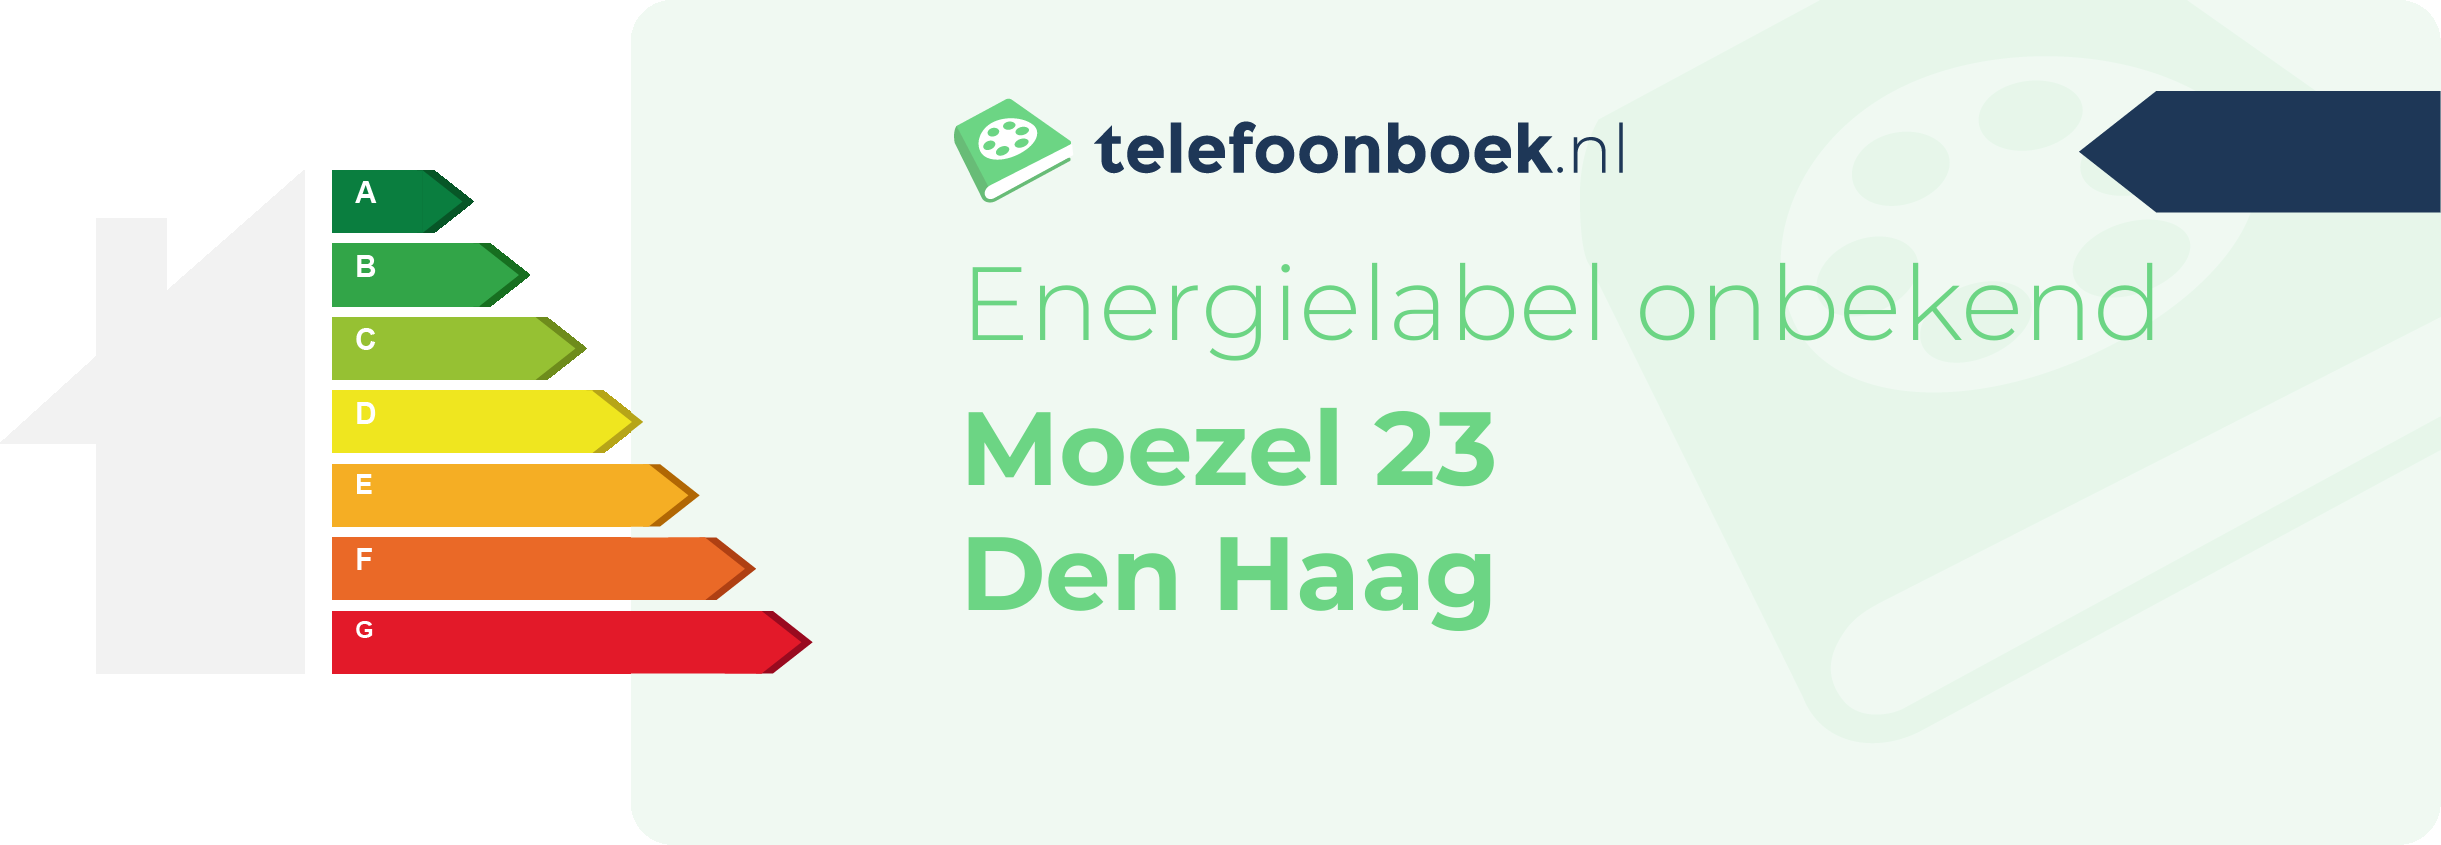 Energielabel Moezel 23 Den Haag